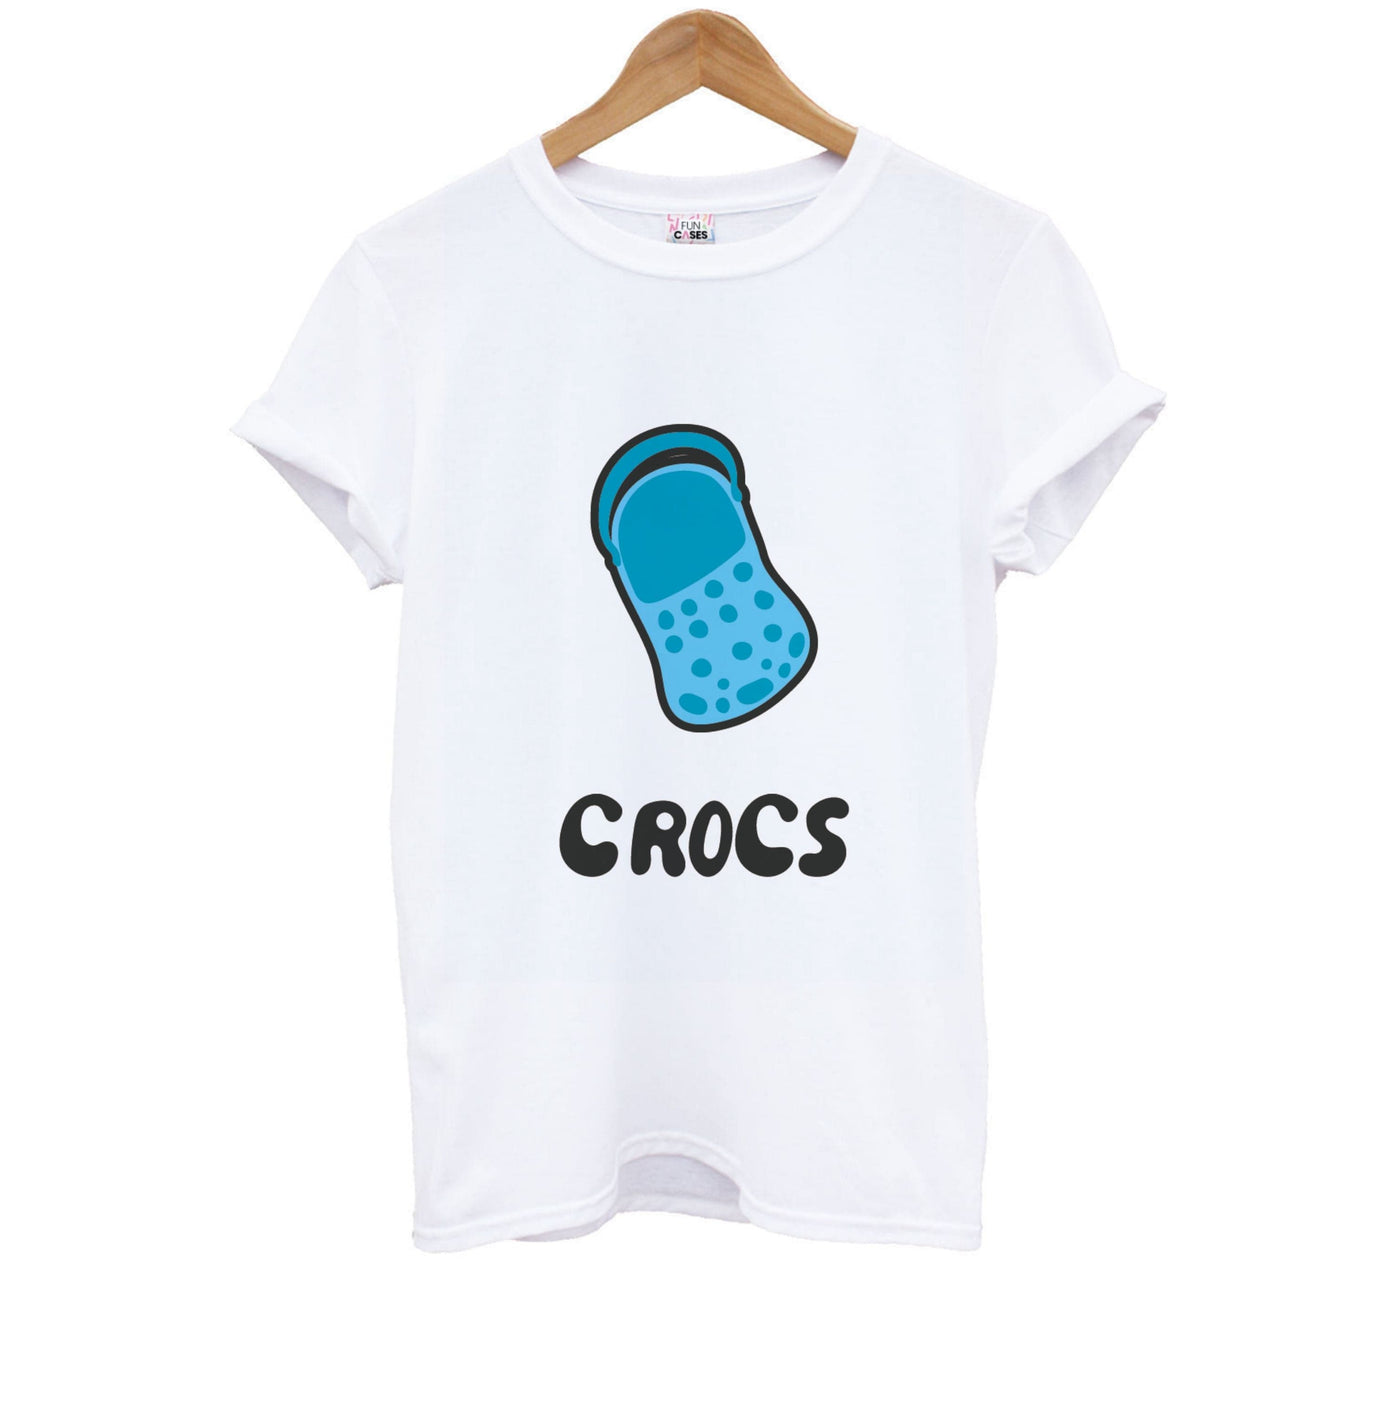 Blue - Crocs Kids T-Shirt